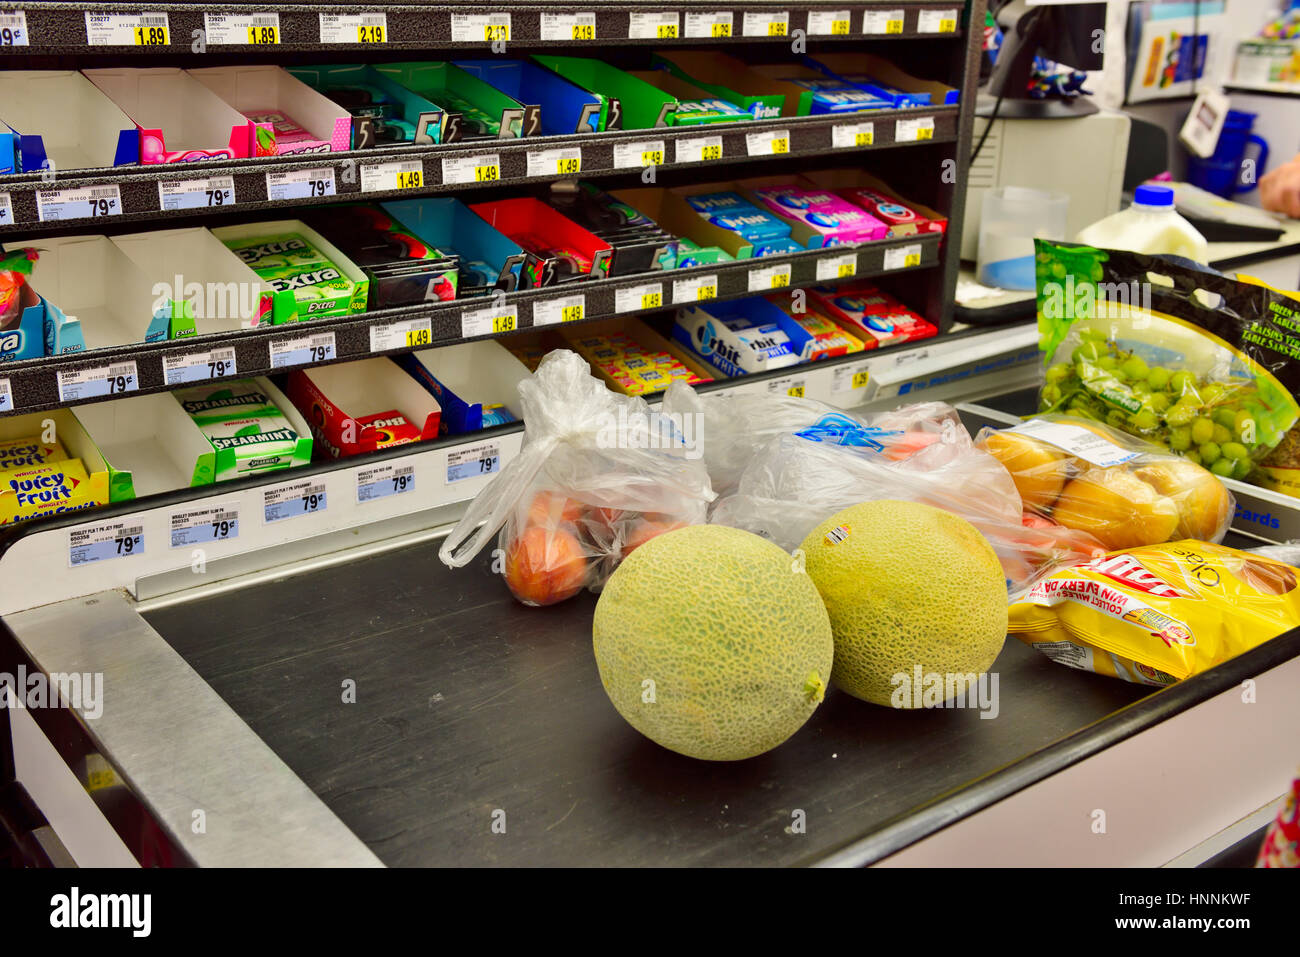 Am Supermarkt Check-out Förderband mit Impuls Kauf Check-out Display zu produzieren Stockfoto